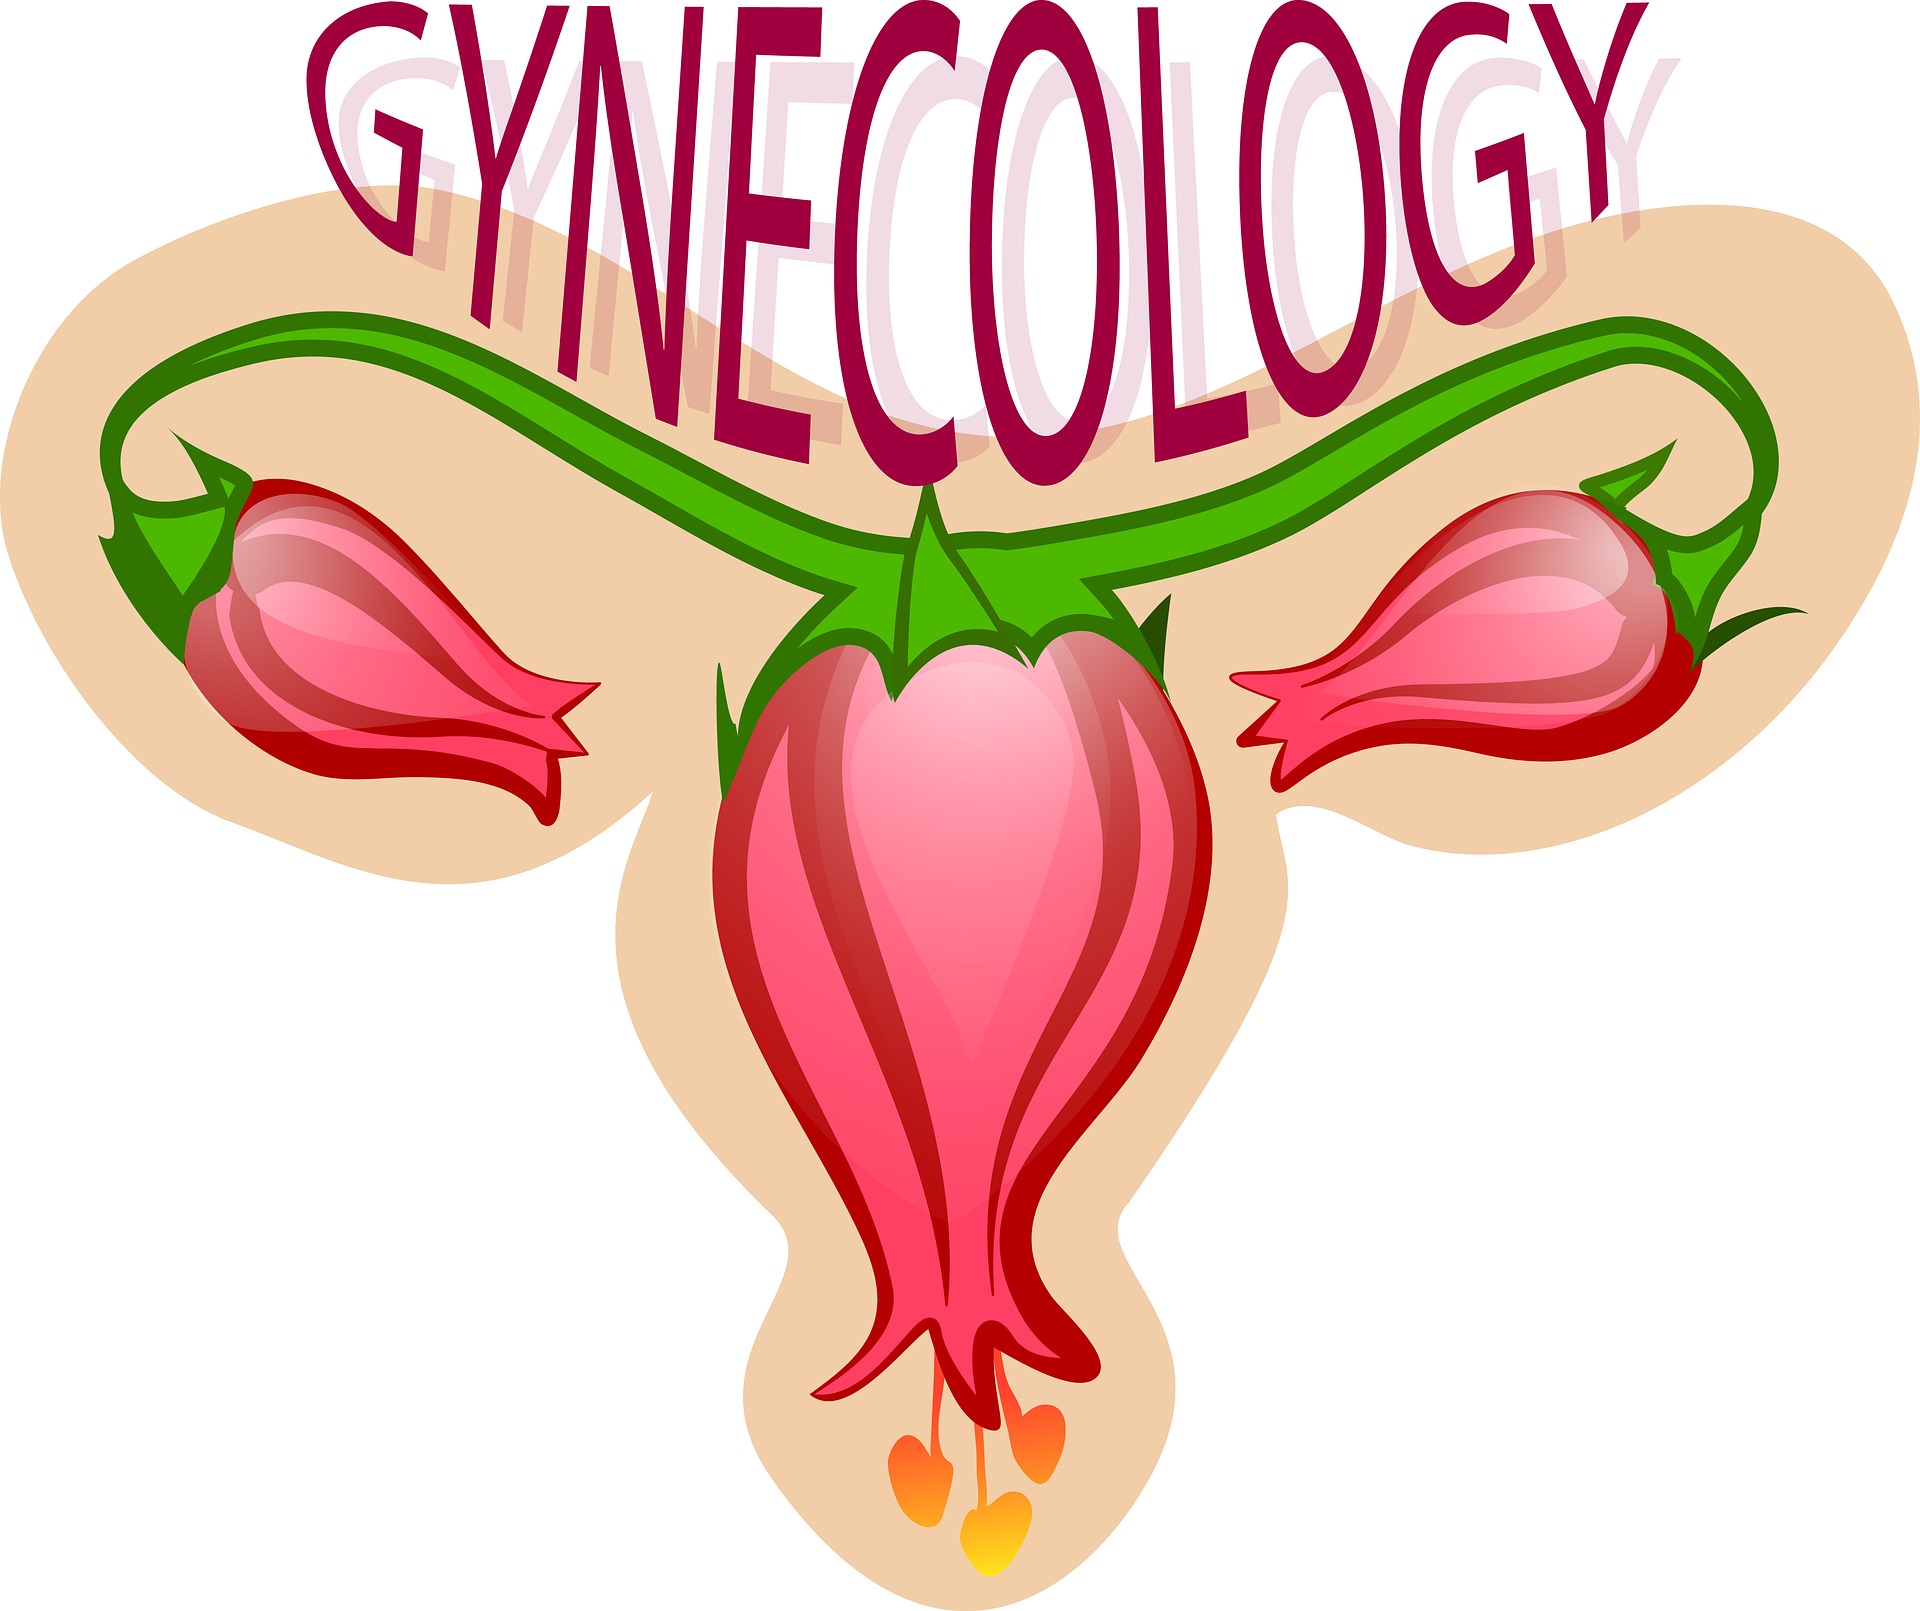 gynecology-2533145_1920